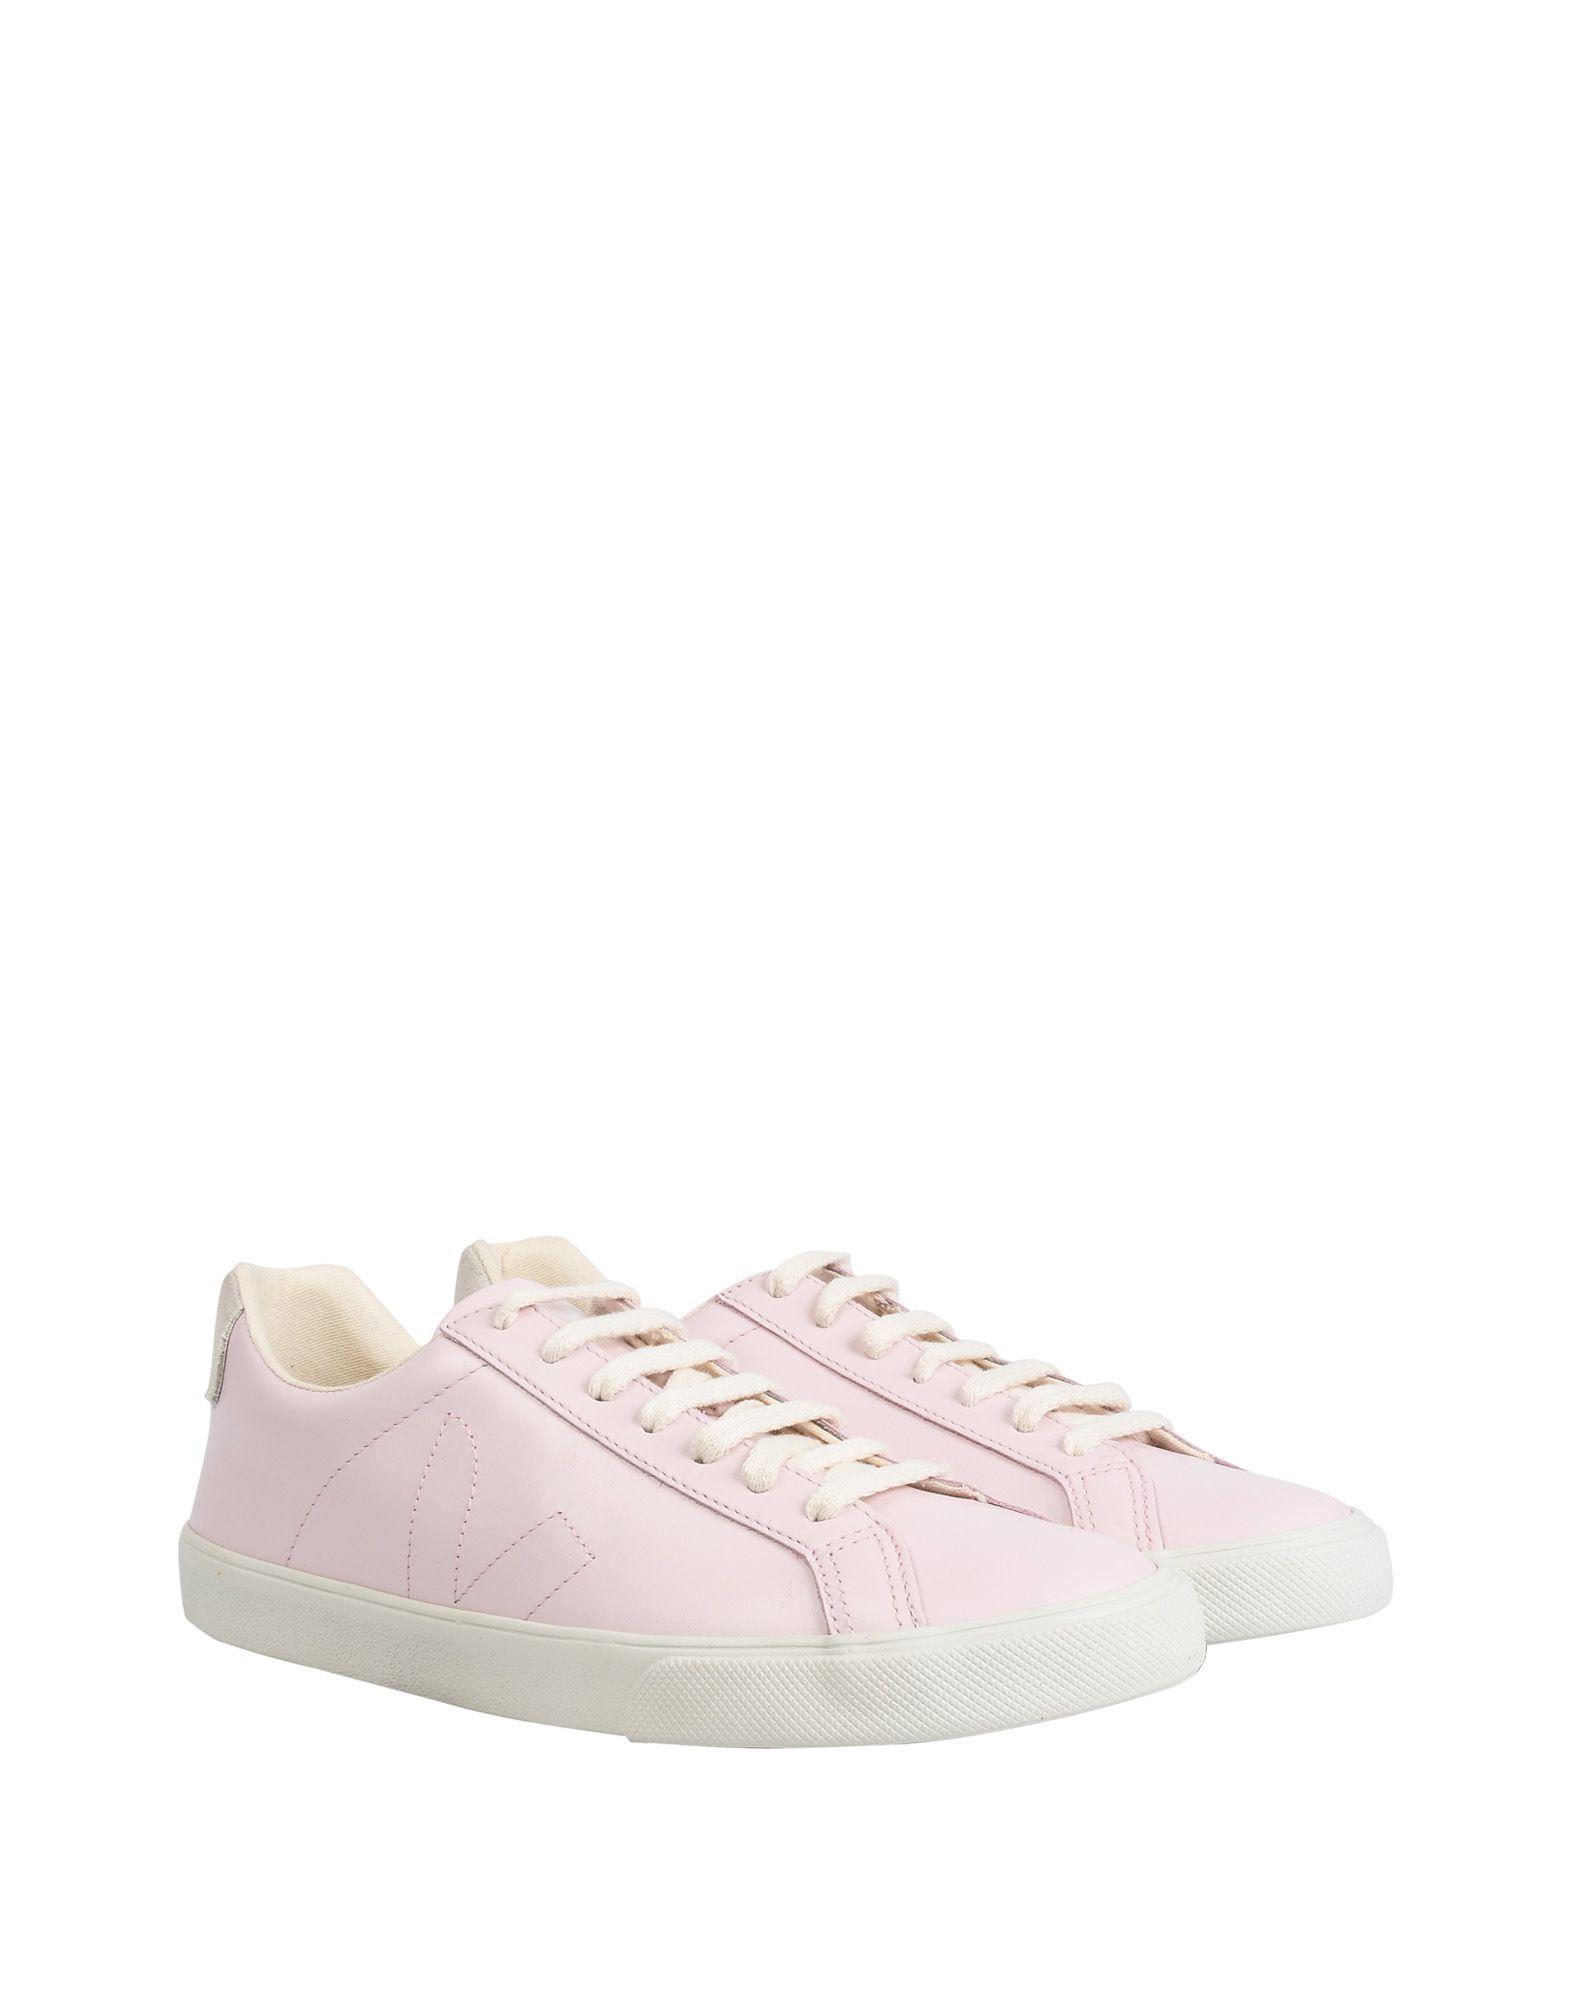 Lyst - Veja Low-tops & Sneakers in Pink